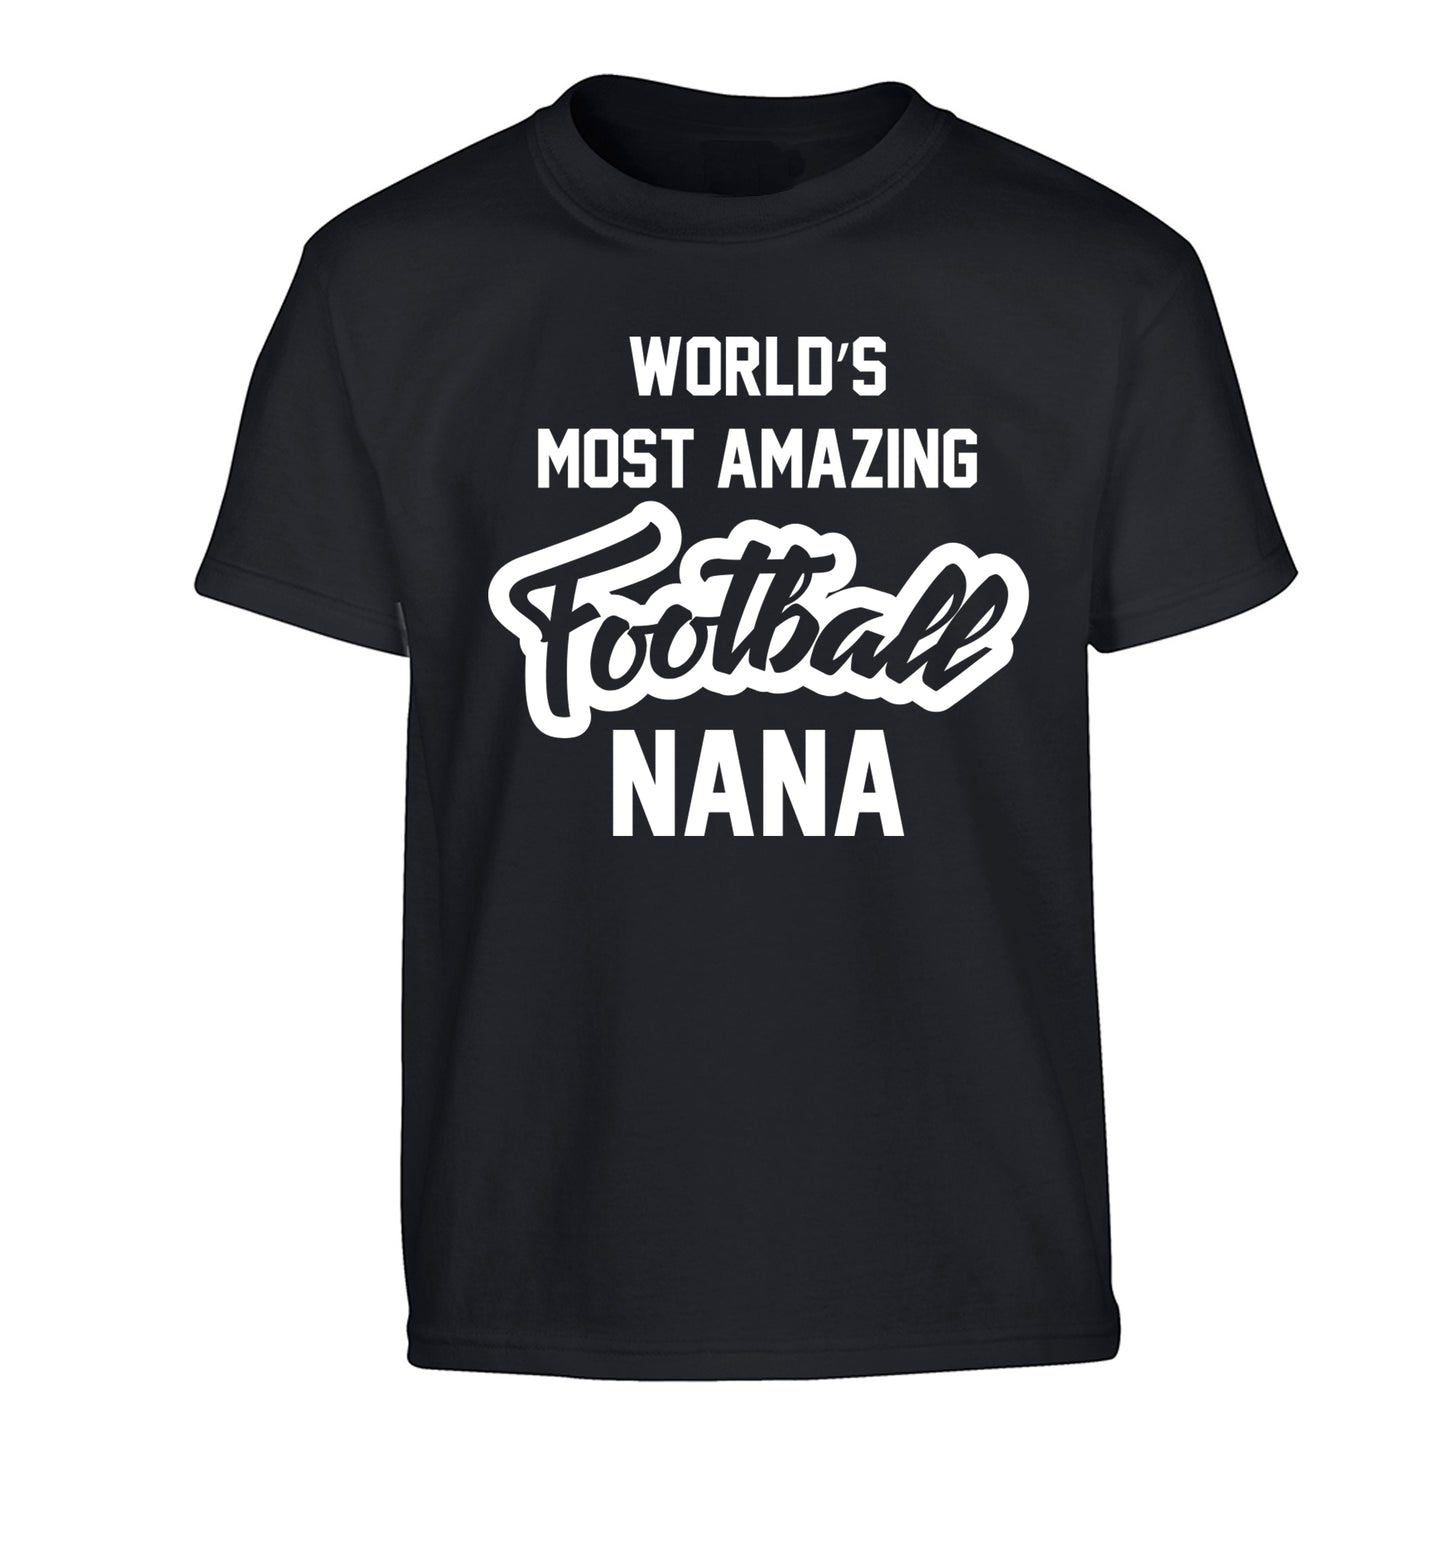 Worlds most amazing football nana Children's black Tshirt 12-14 Years